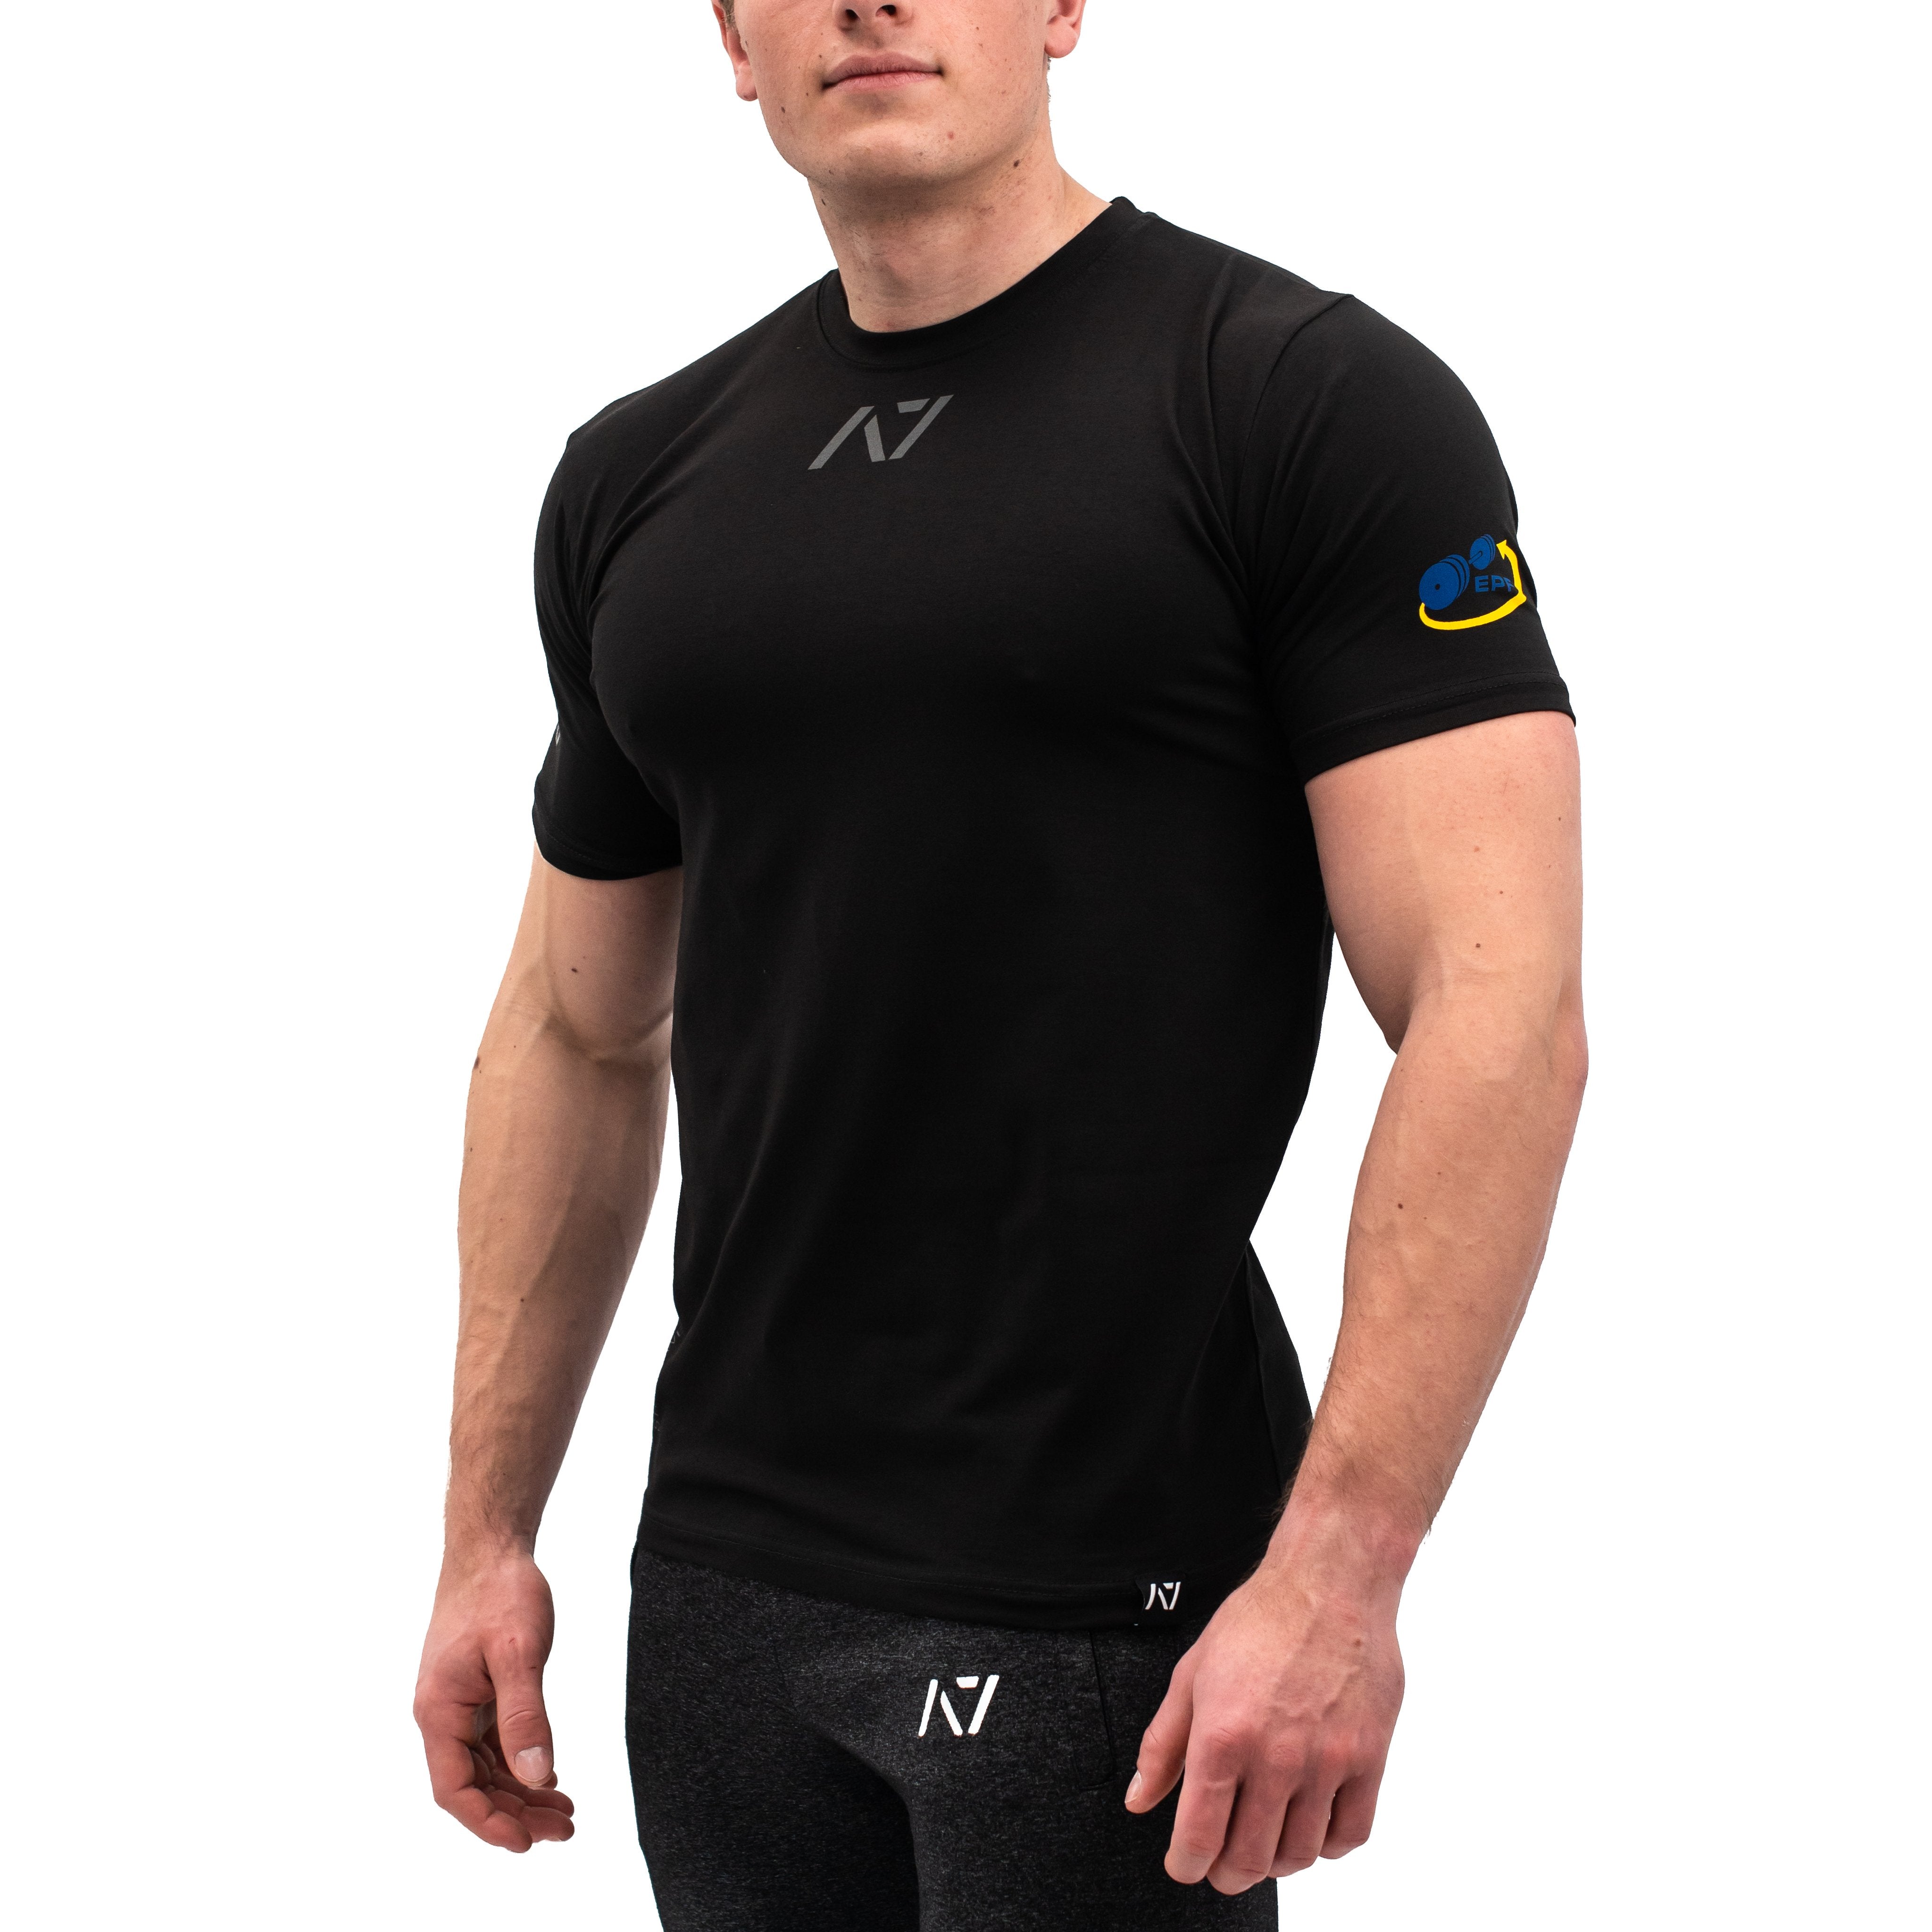 Balance Graphite Men's Shirt  A7 Europe Shipping to EU – A7 EUROPE